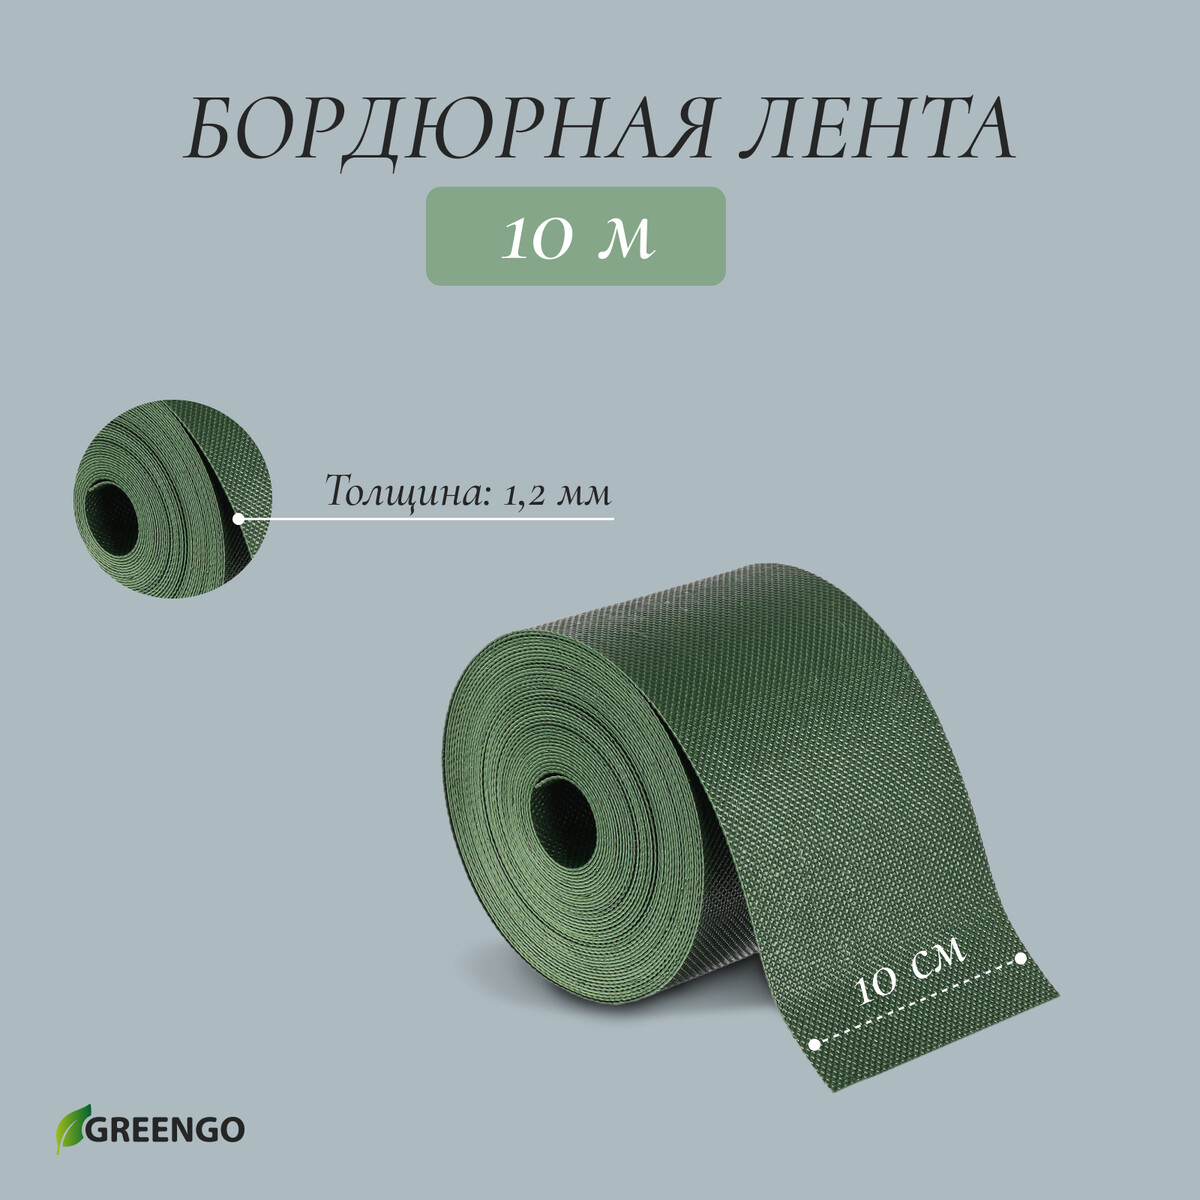 Лента бордюрная, 0.1 × 10 м, толщина 1.2 мм, пластиковая, зеленая, greengo